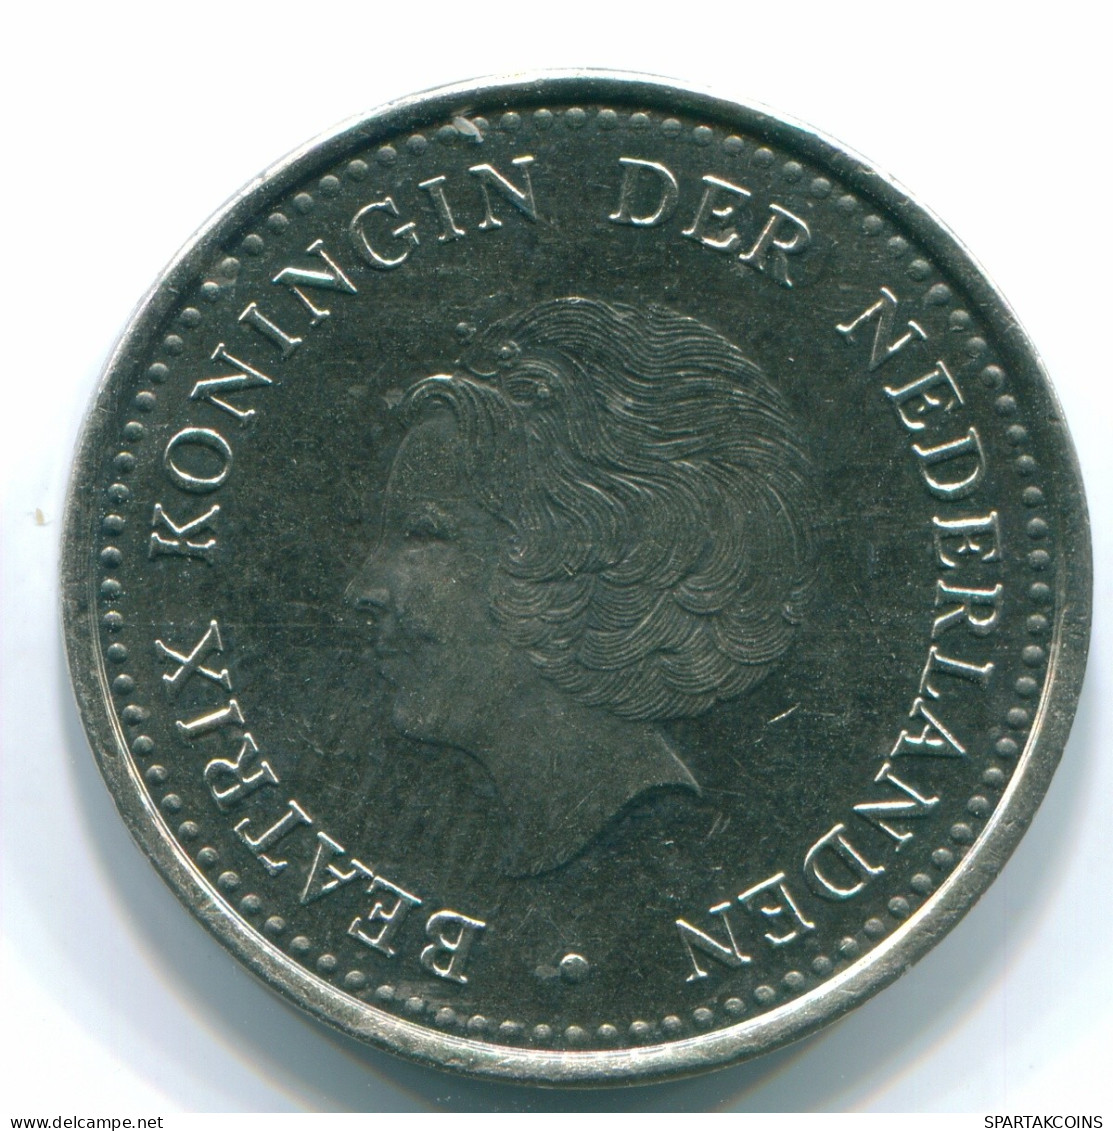 1 GULDEN 1980 NETHERLANDS ANTILLES Nickel Colonial Coin #S12046.U.A - Antillas Neerlandesas